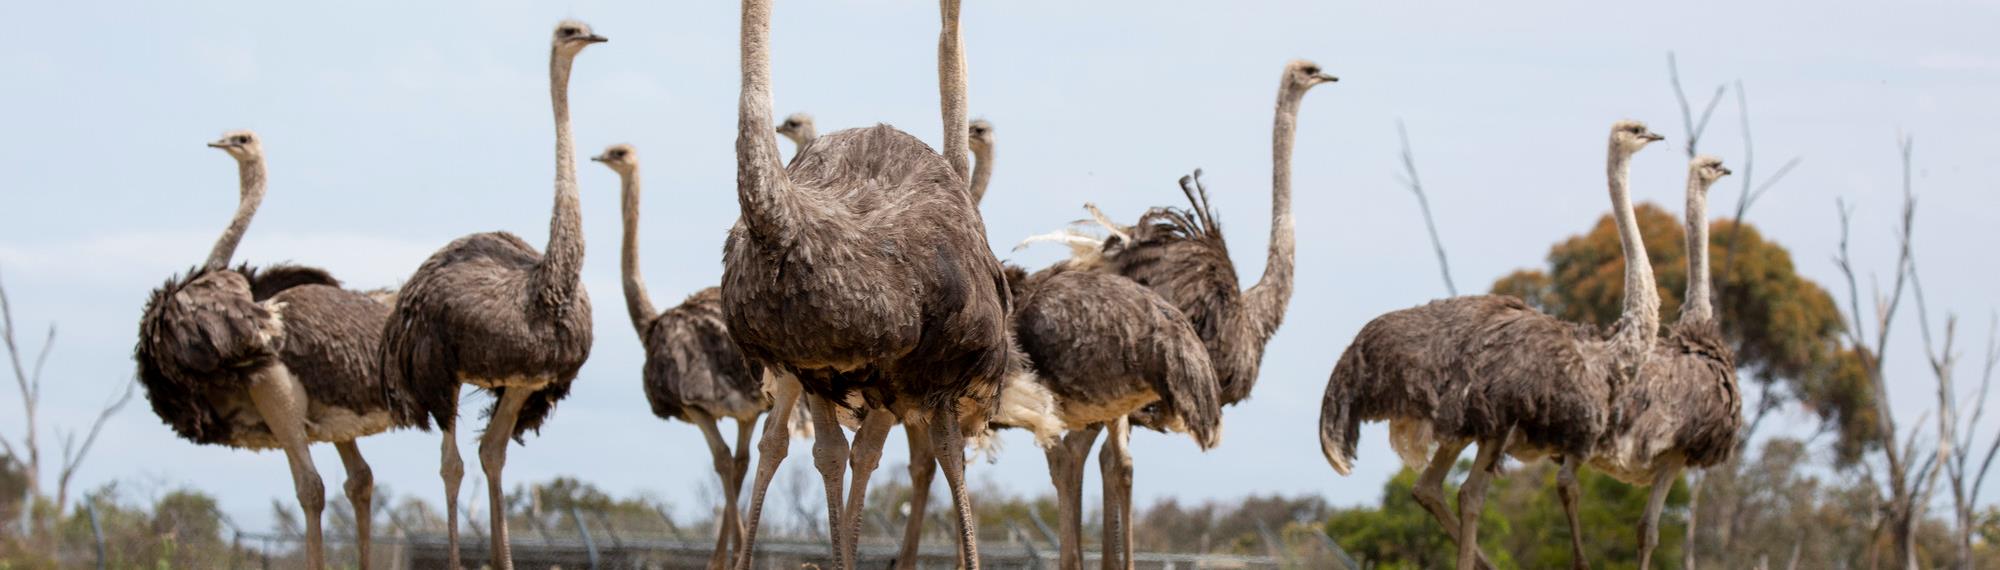 Ten Ostriches on the Savannah plain.